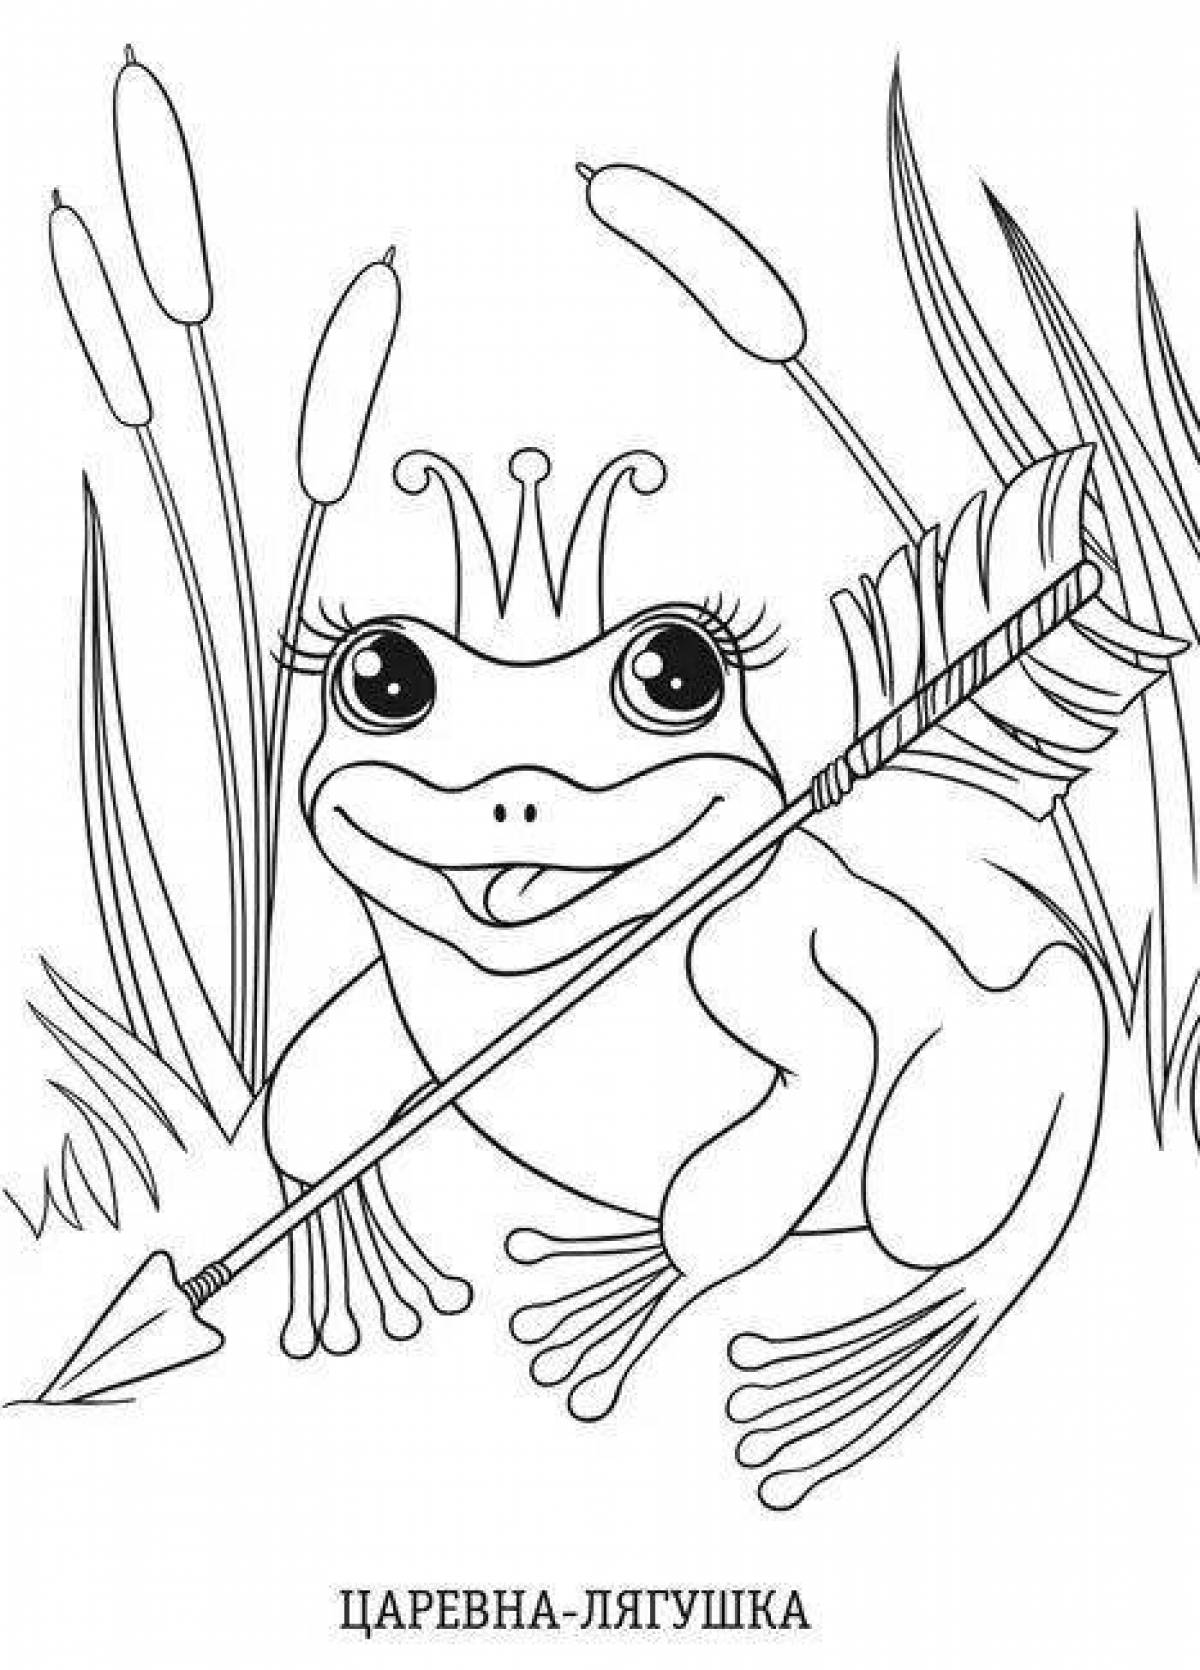 Нарисовать иллюстрацию к сказке Царевна лягушка